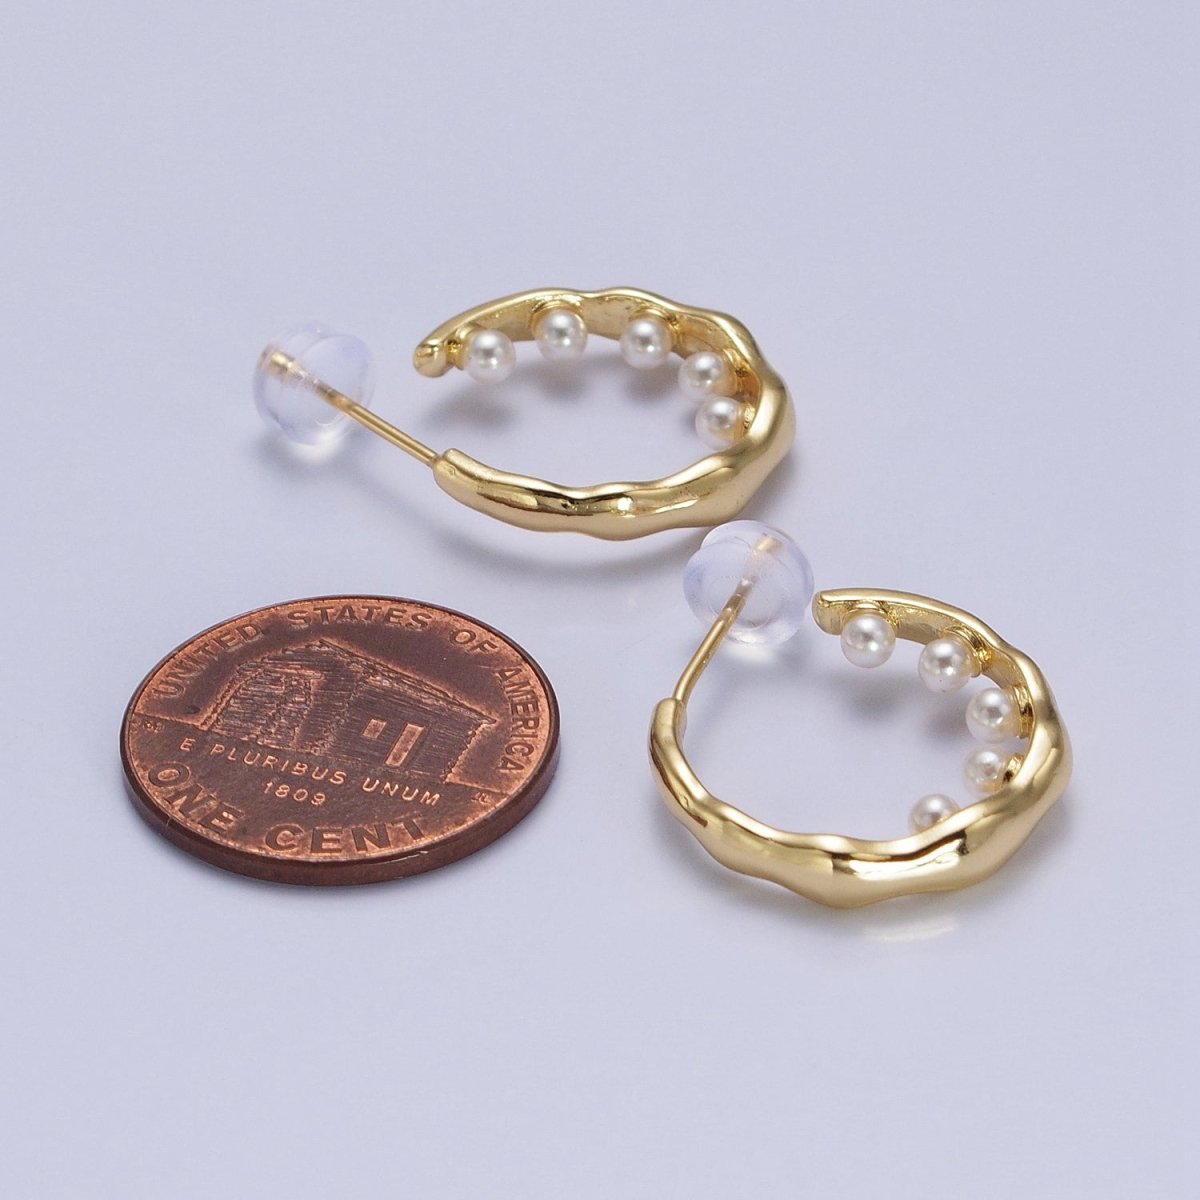 Pearl Hoop Earrings| Irregular Gold Hoop Earrings| Textured Hoop Earrings| Abstract Wavy Earrings Modern Statement Earrings AB195 - DLUXCA